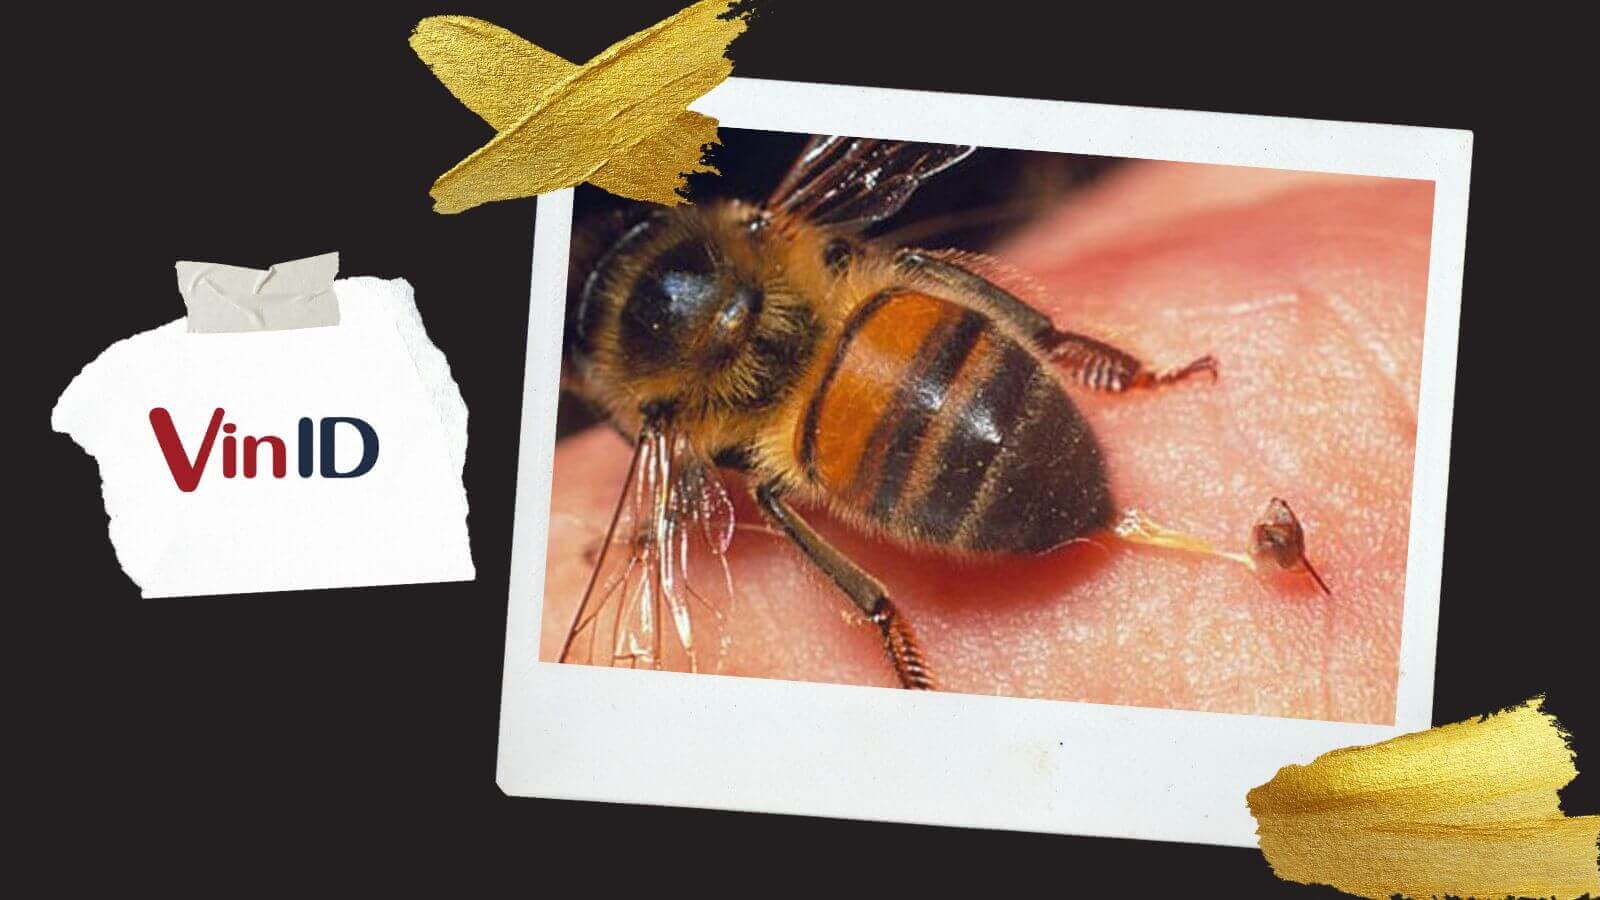 Người ta thường không biết cách xử lý vết ong đốt một cách đúng cách. Hãy xem hình ảnh này để biết thêm về những phương pháp giảm đau và giảm sưng hiệu quả. Chúng tôi hy vọng những gợi ý này sẽ giúp ích cho bạn nếu bạn bị đốt bởi ong.